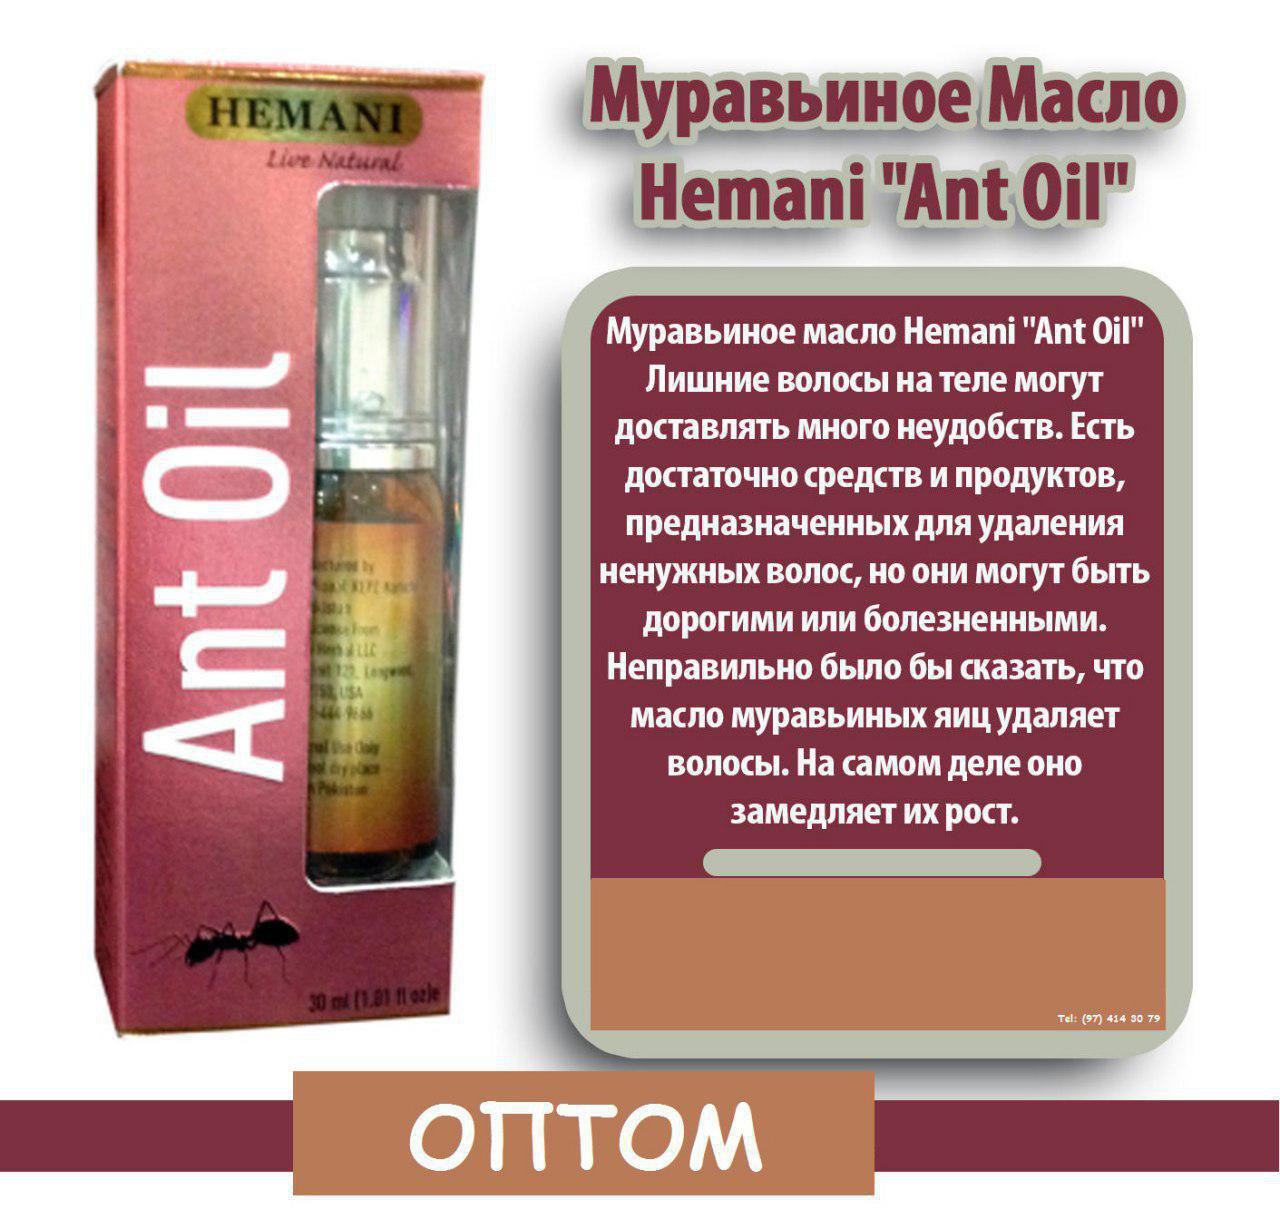 Hemani Ant Oil. Муравьиное масло турецкий. Муравьиное масло в муравейнике. Масло муравьиных яиц для удаления нежелательных волос навсегда. Муравьиное масло для удаления